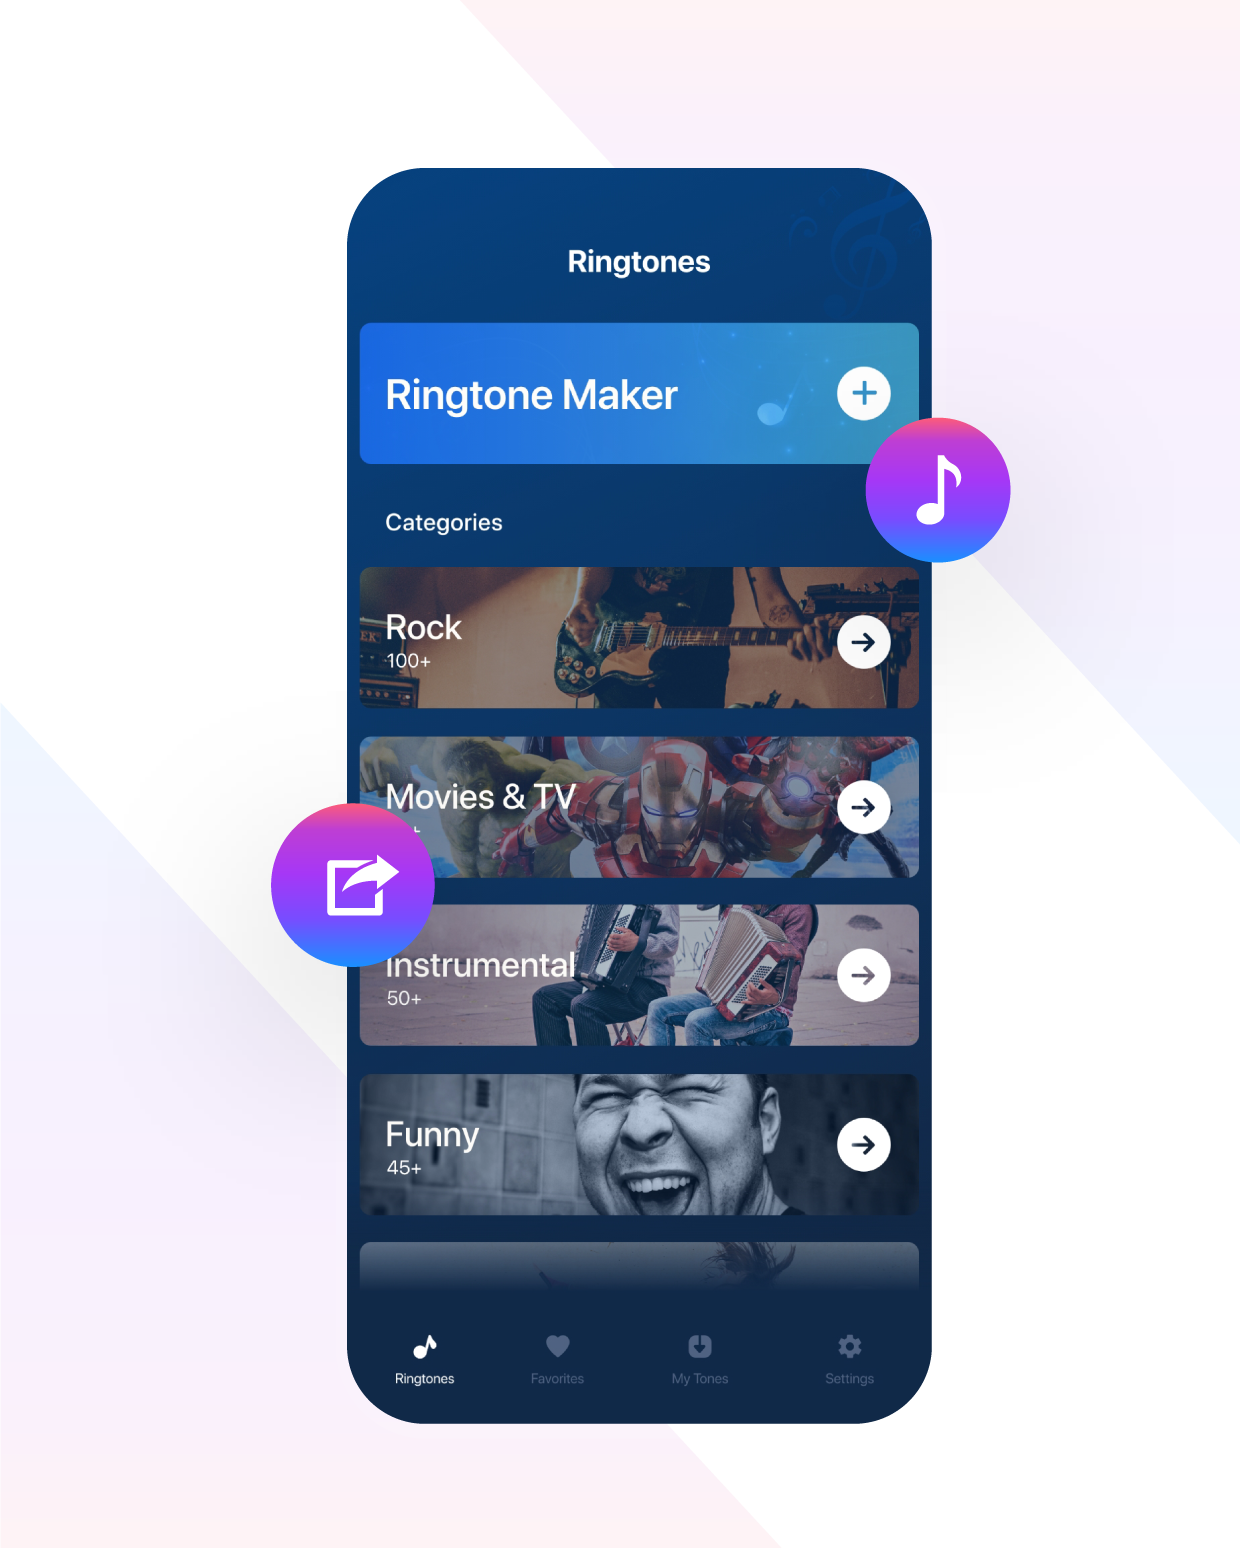 Ringtone Maker App Premium Features